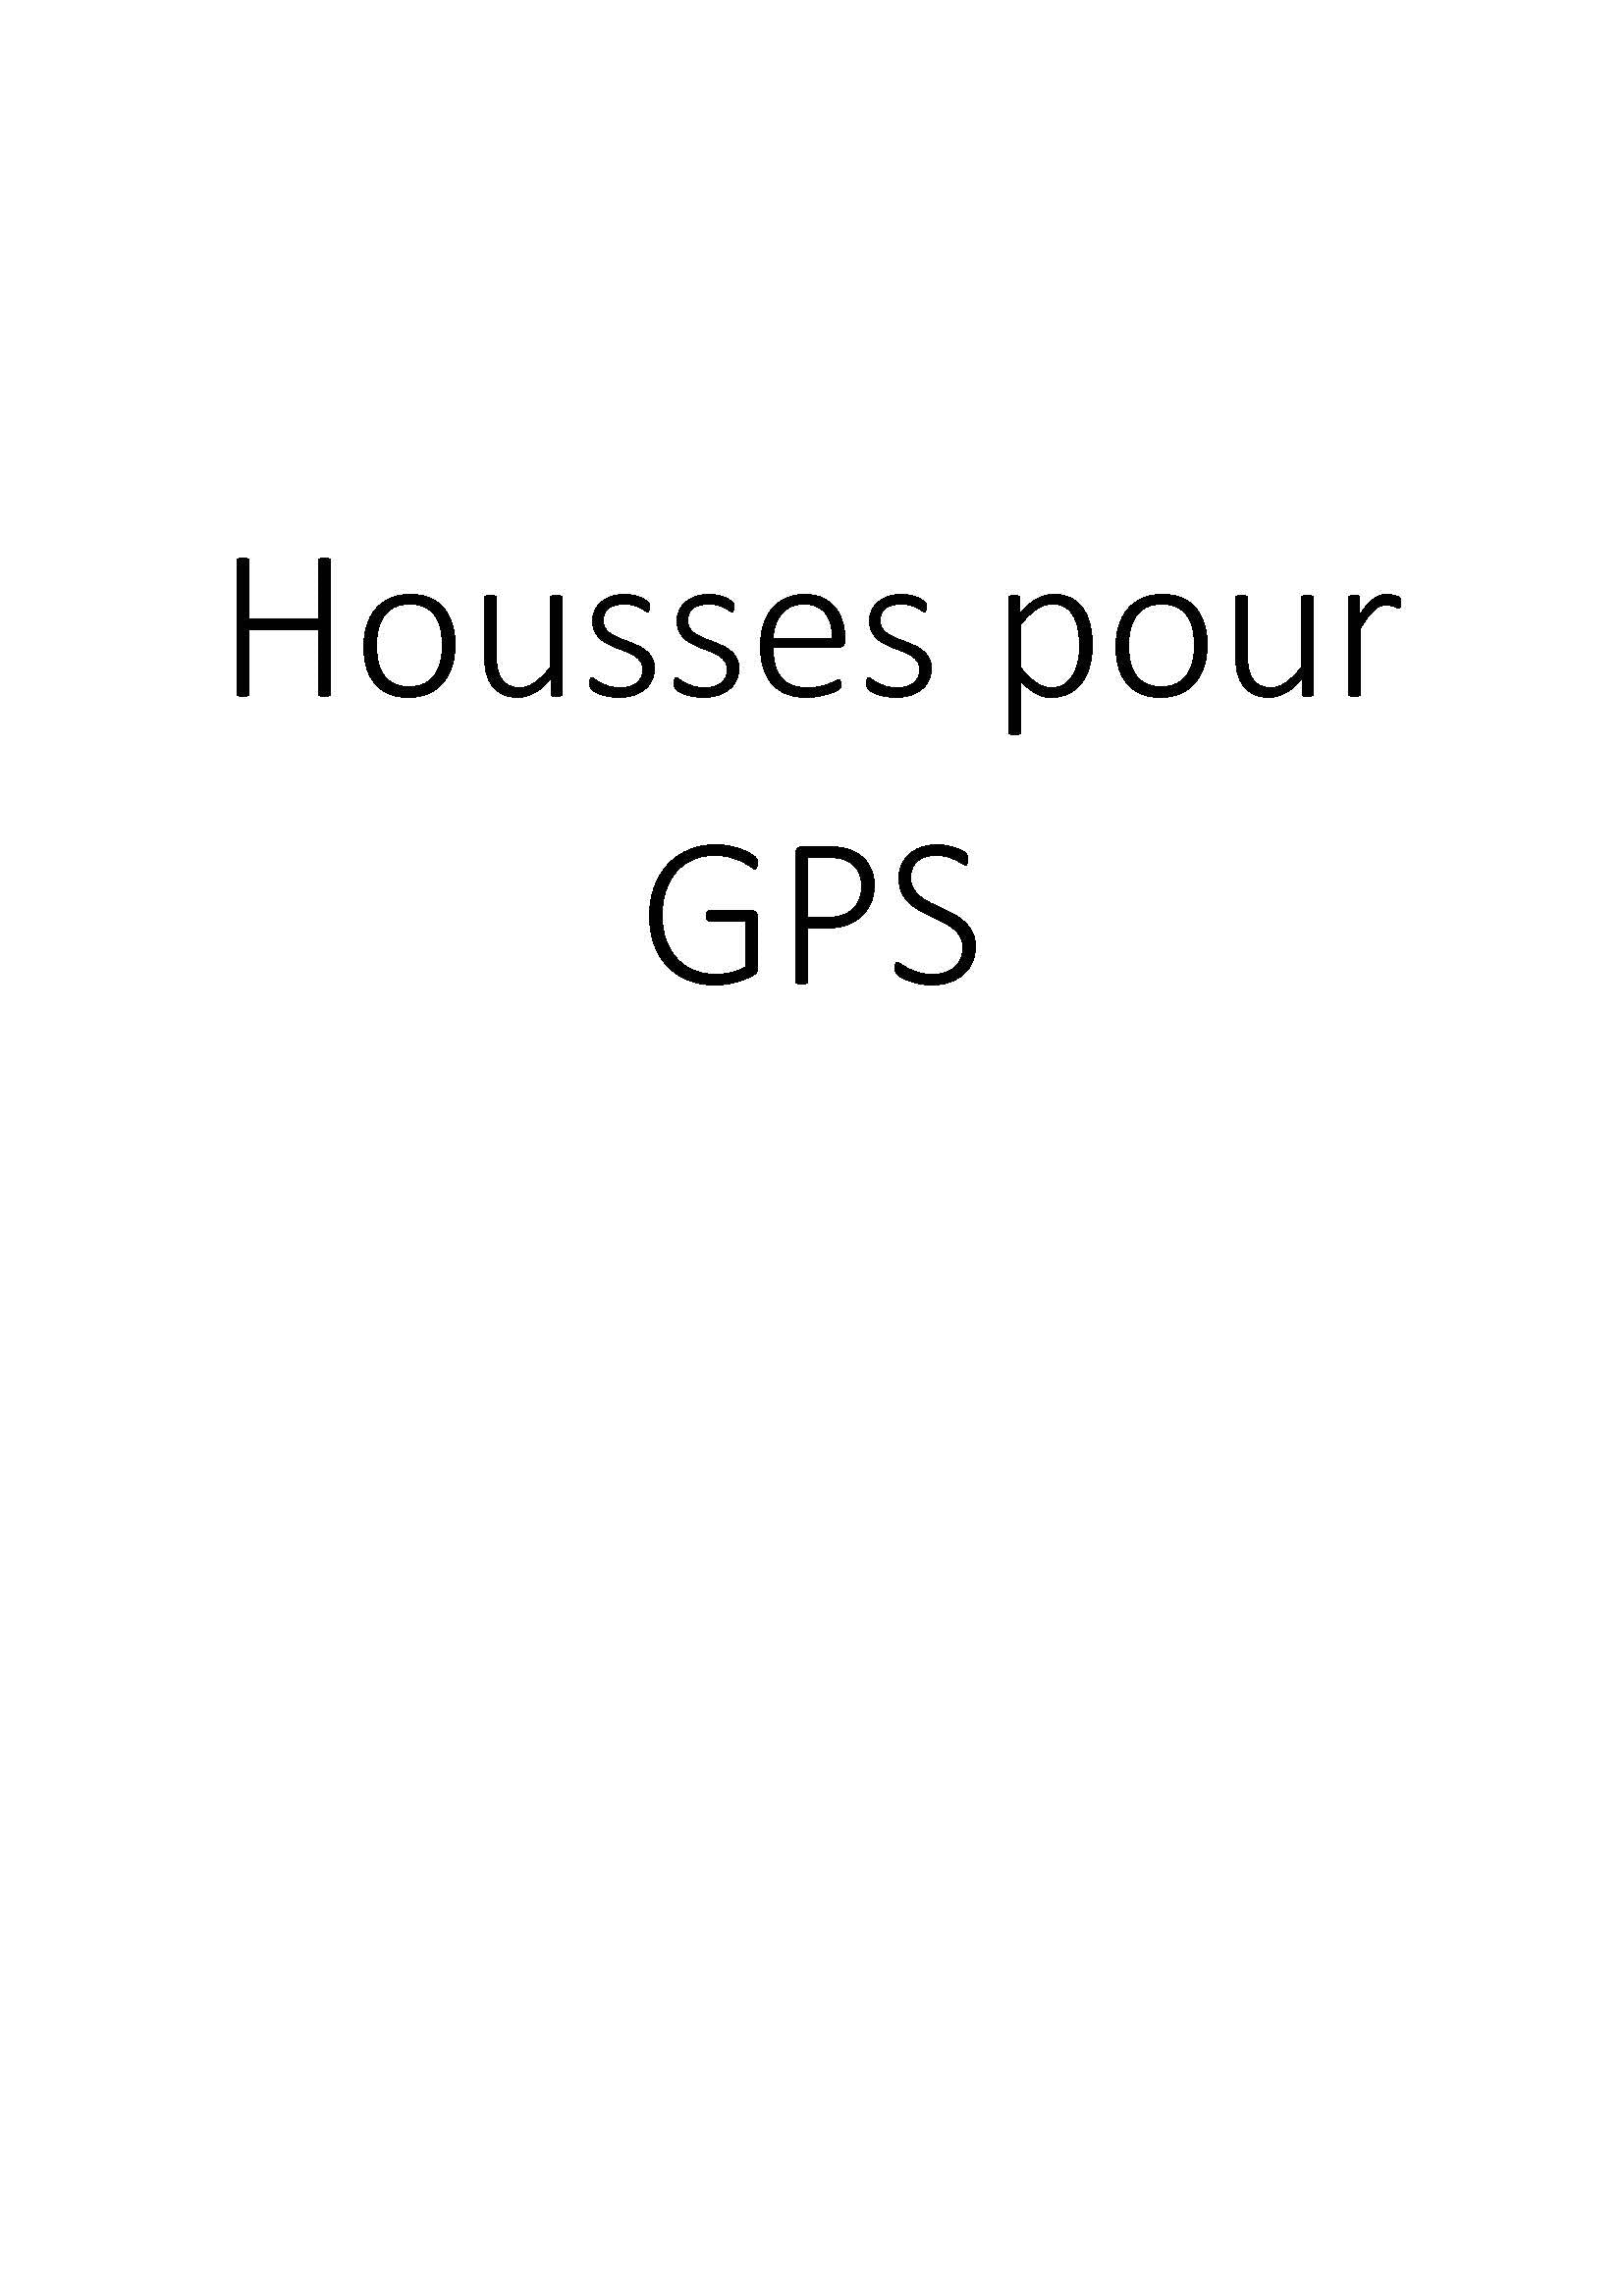 Housses pour GPS clicktofournisseur.com